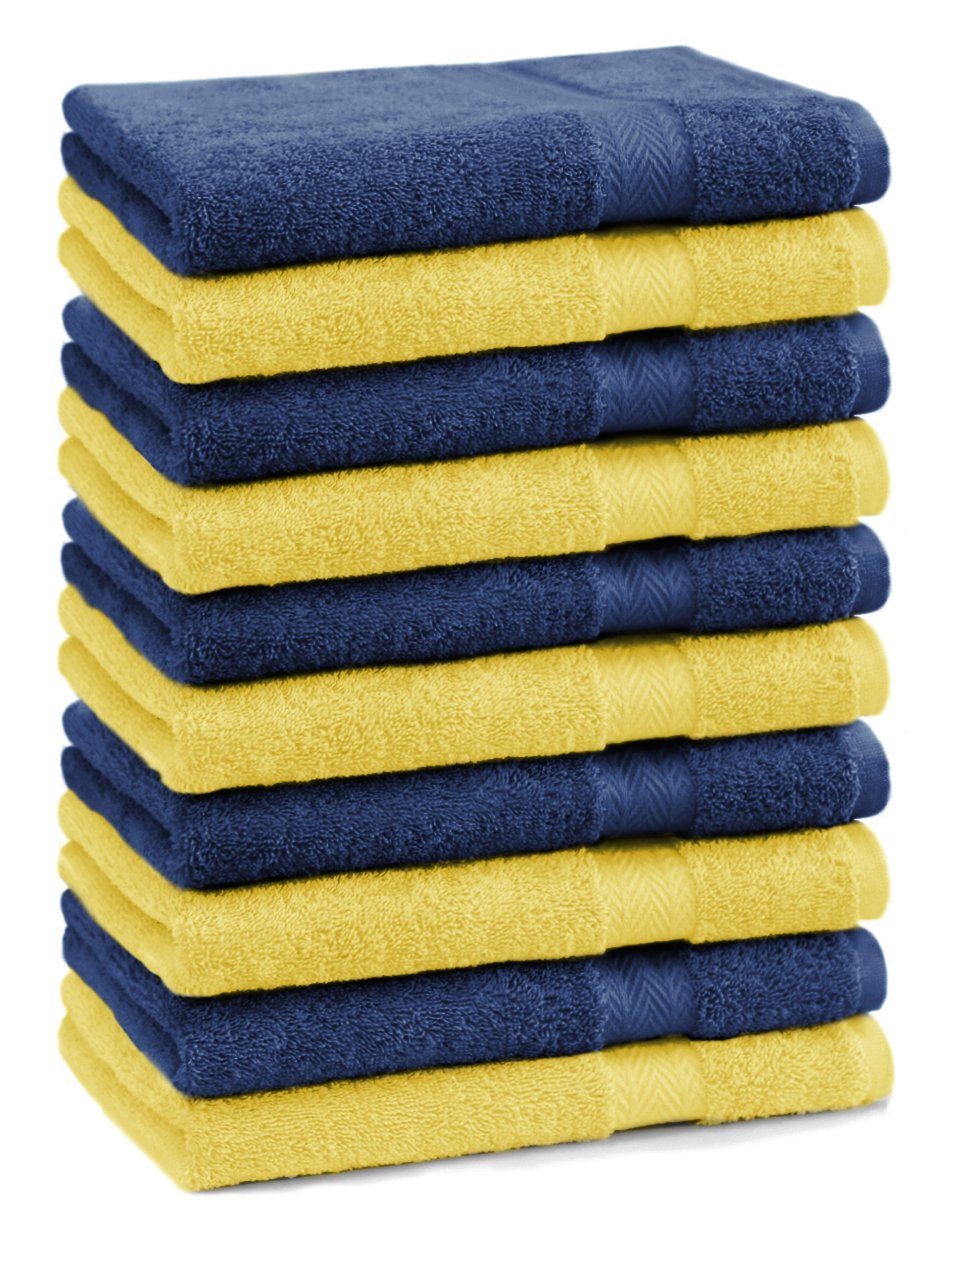 Betz Gästehandtücher 10 Stück Gästehandtücher Premium 100% Baumwolle Gästetuch-Set 30x50 cm Farbe gelb und dunkelblau, 100% Buaumwolle